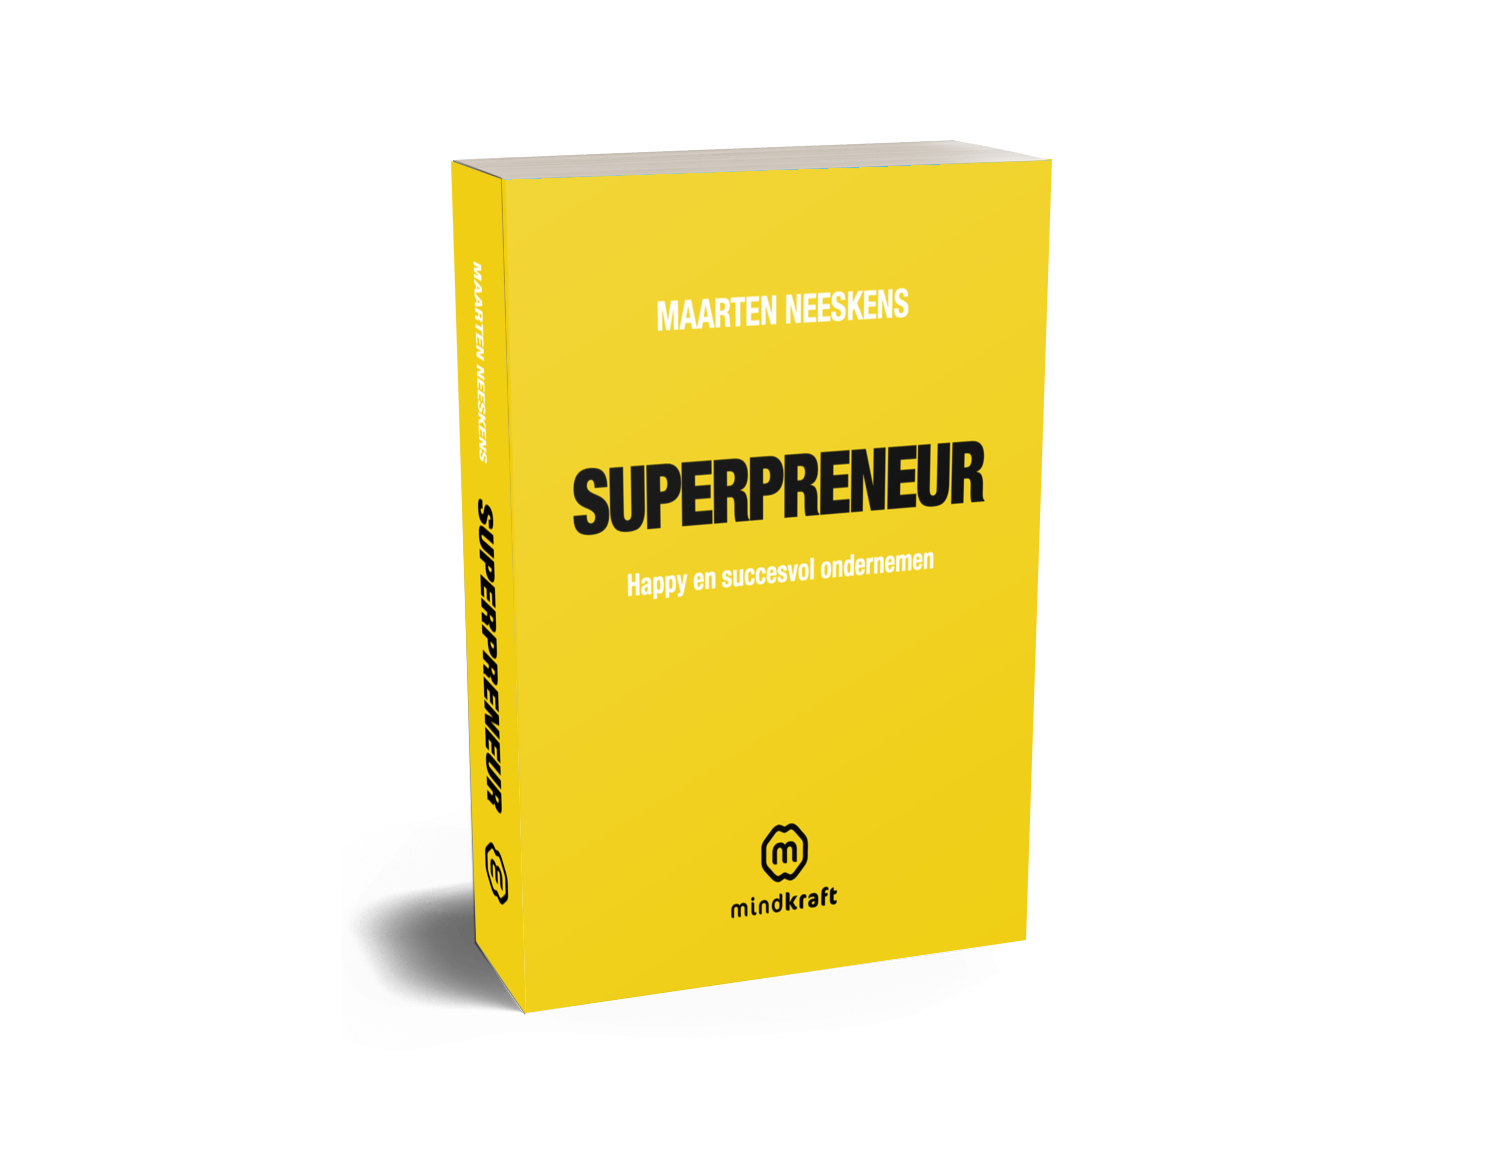 Pre-order Boek Superpreneur + Gratis Mindkraft Korting-card